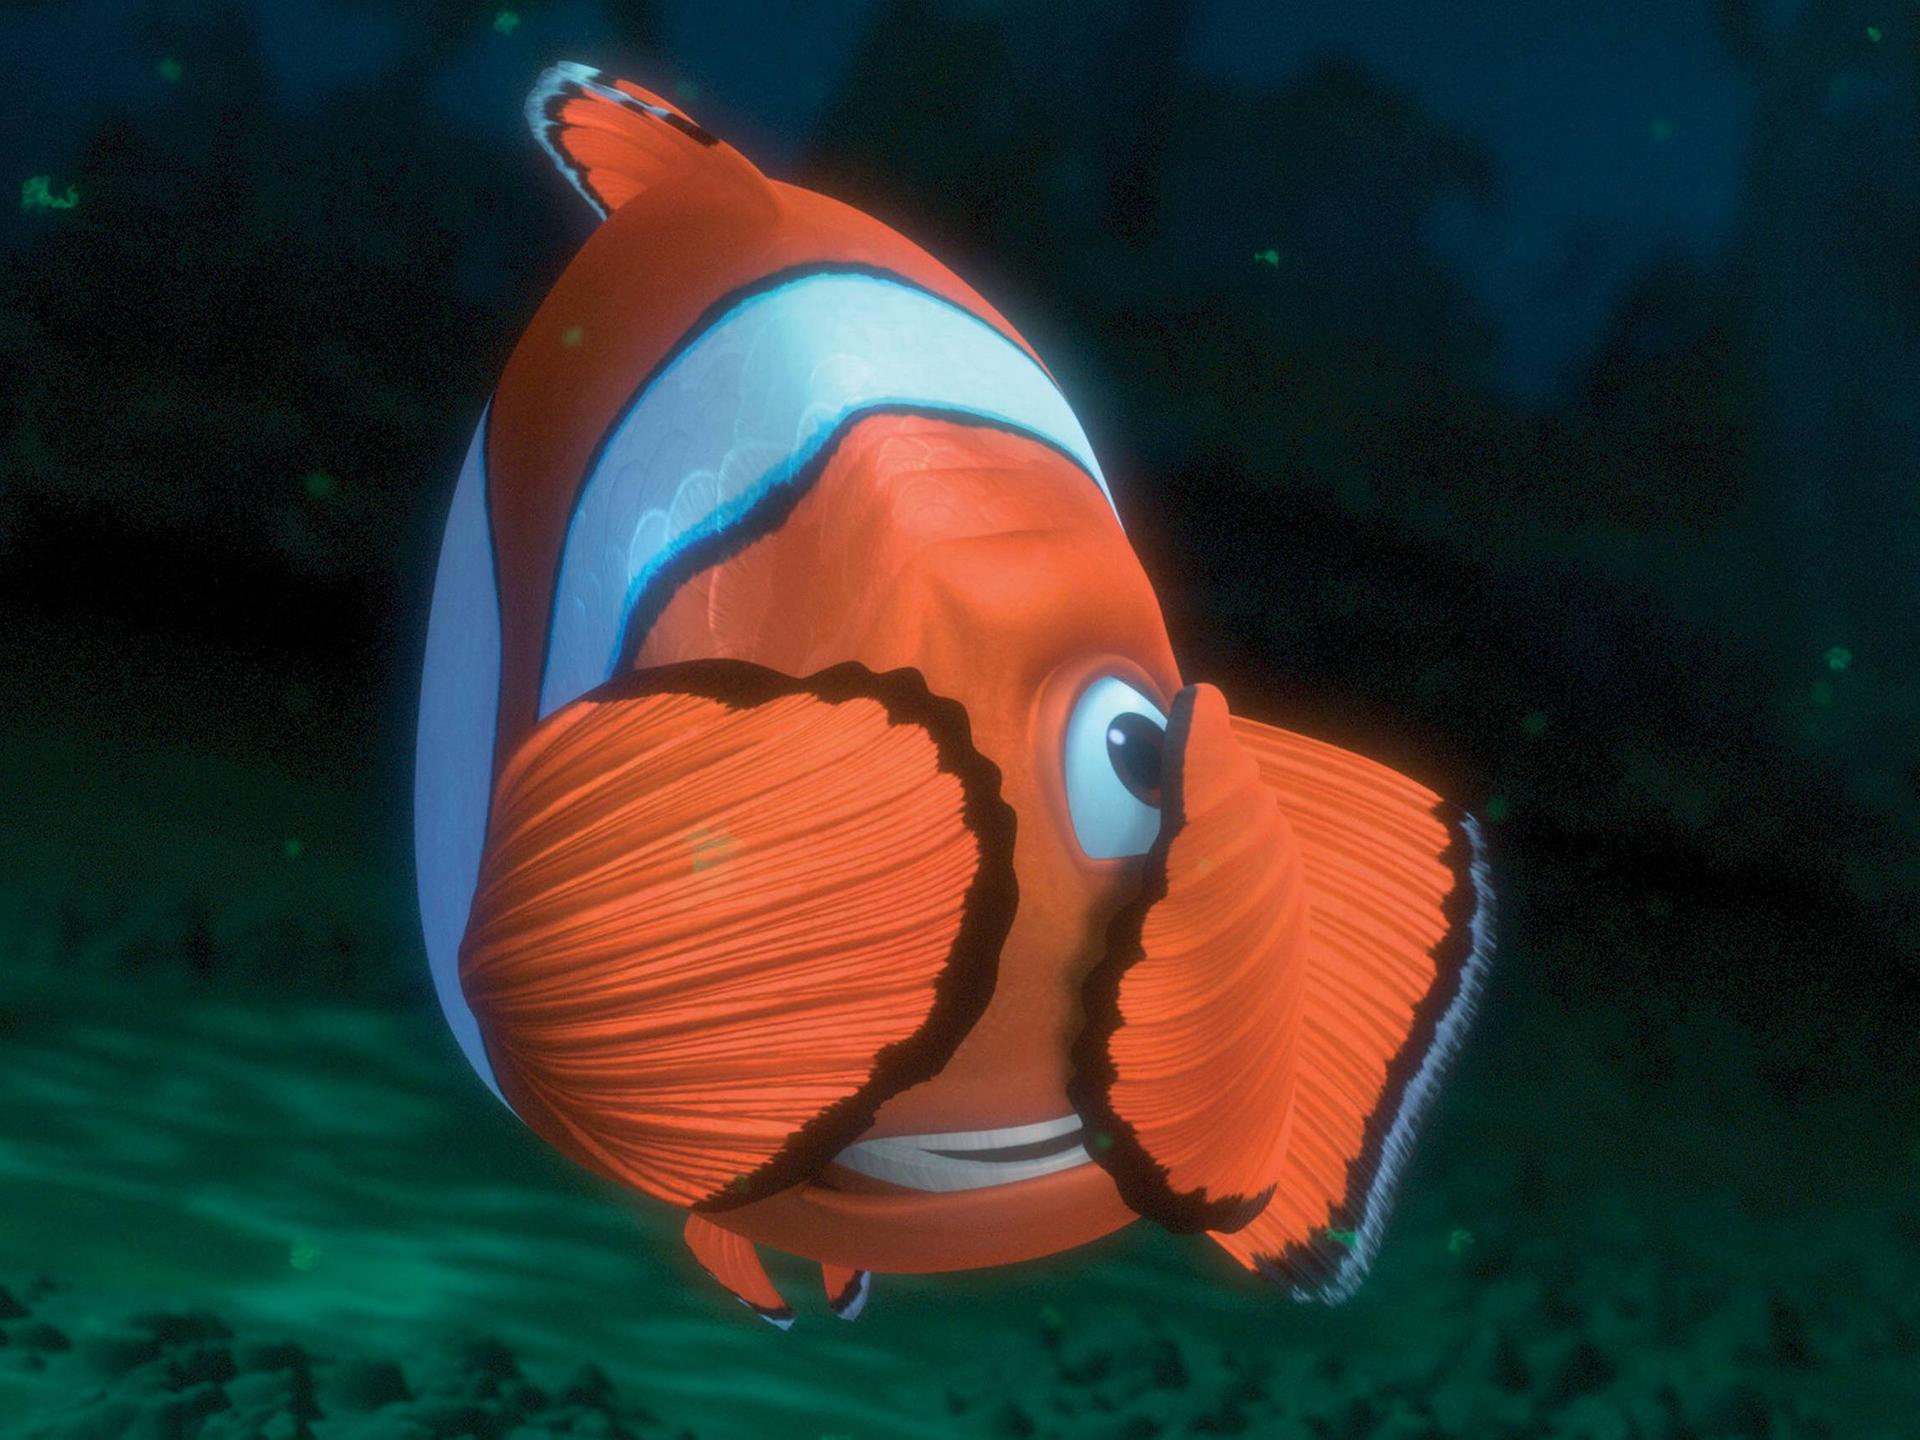 Szenenbild aus dem Film "Findet Nemo". Der Vater von Nemo hält sich mit den Flossen die Augen zu.